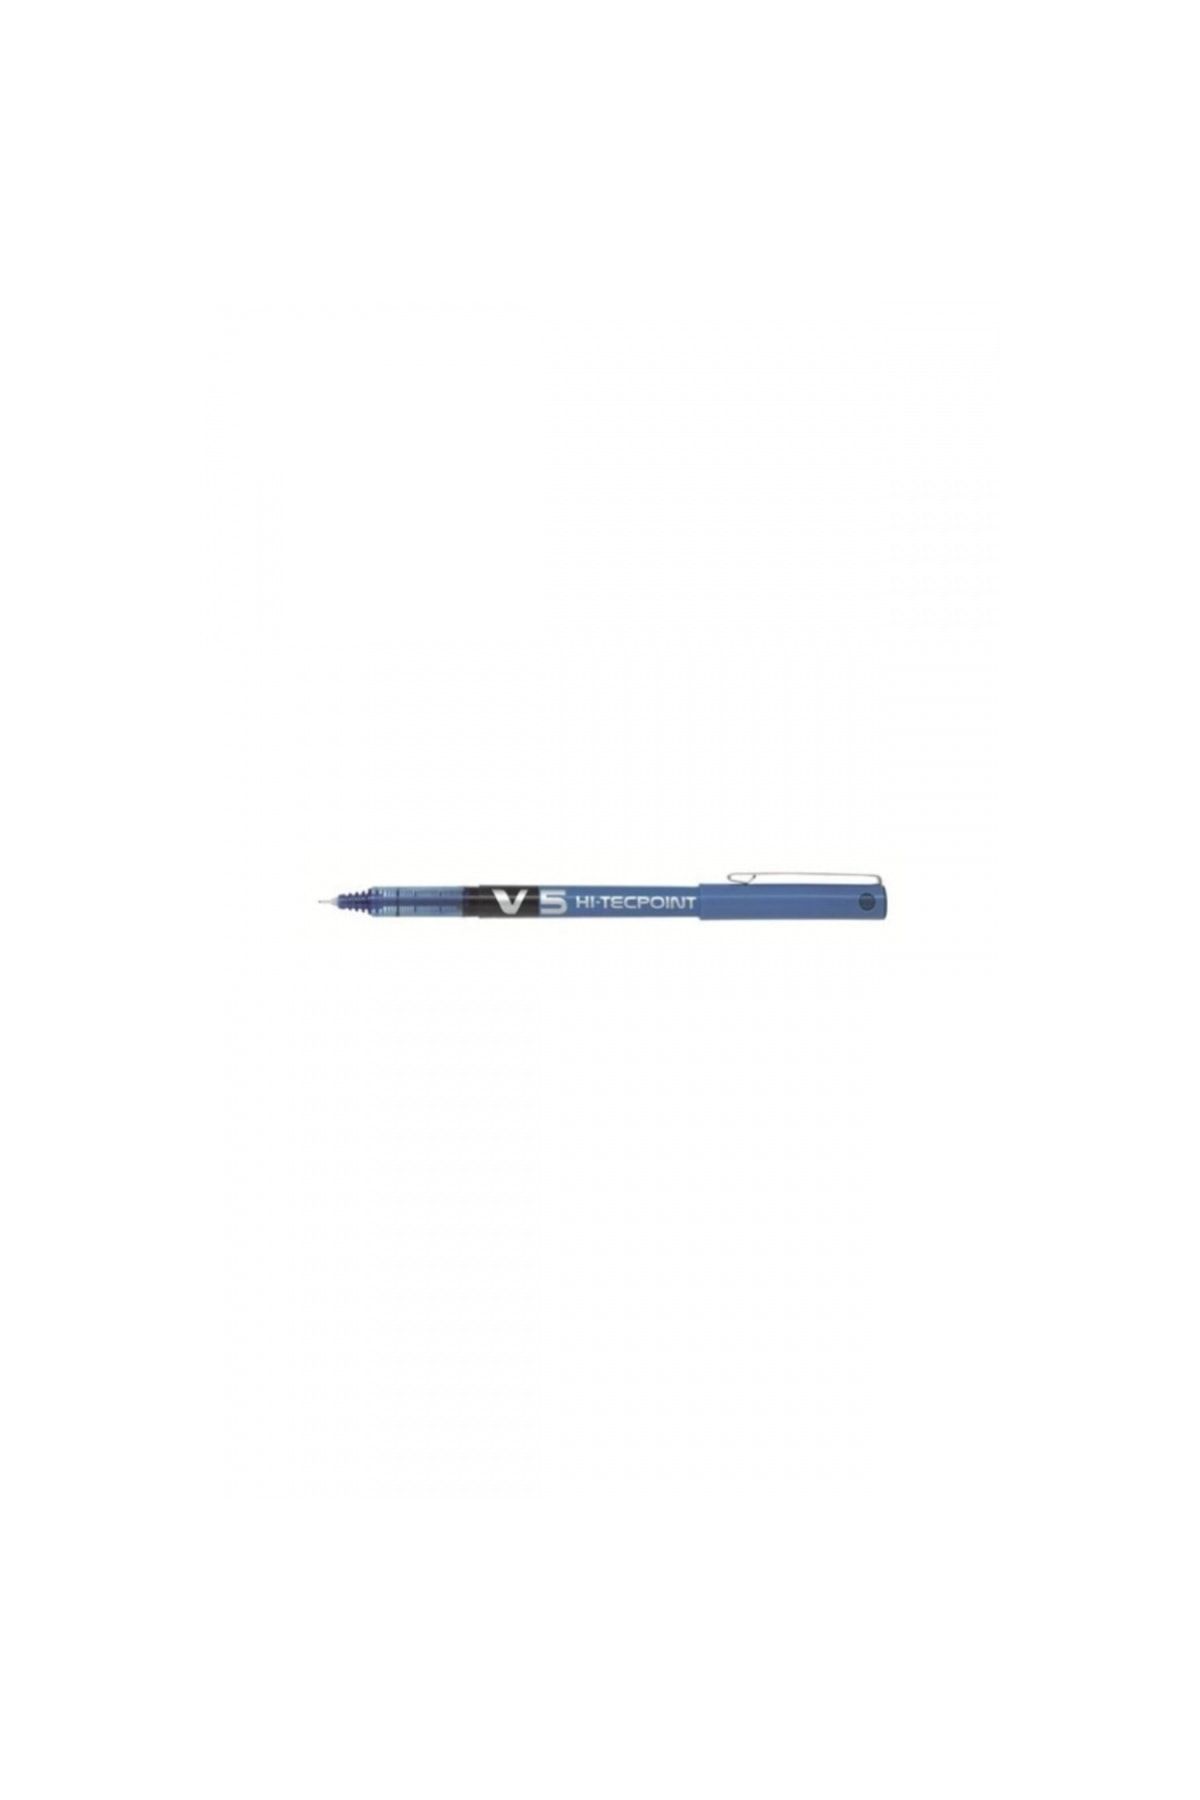 Stabilo Pılot Roller Uç Iğne V5 Mavi Kalem